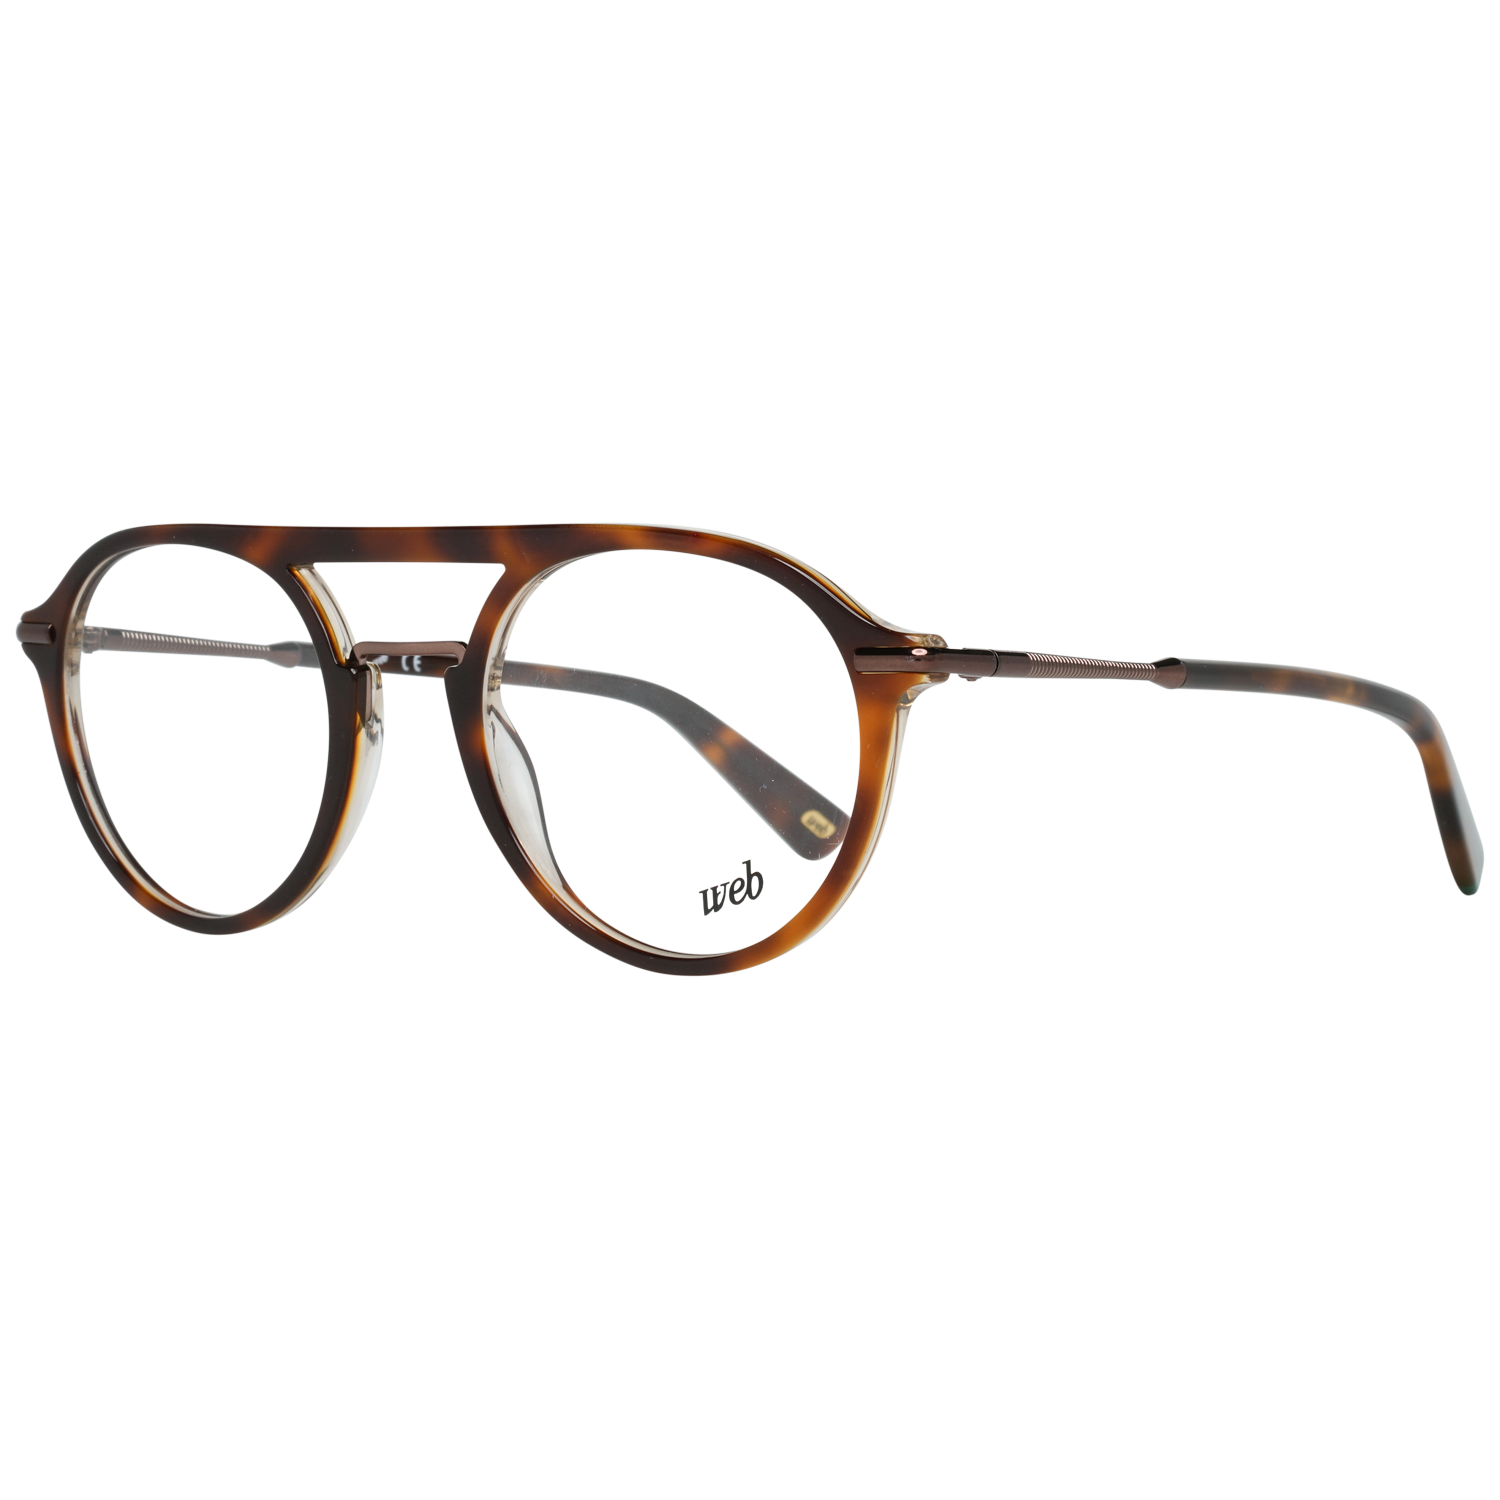 Web Frames Web Glasses Optical Frame WE5234 056 50 Eyeglasses Eyewear UK USA Australia 